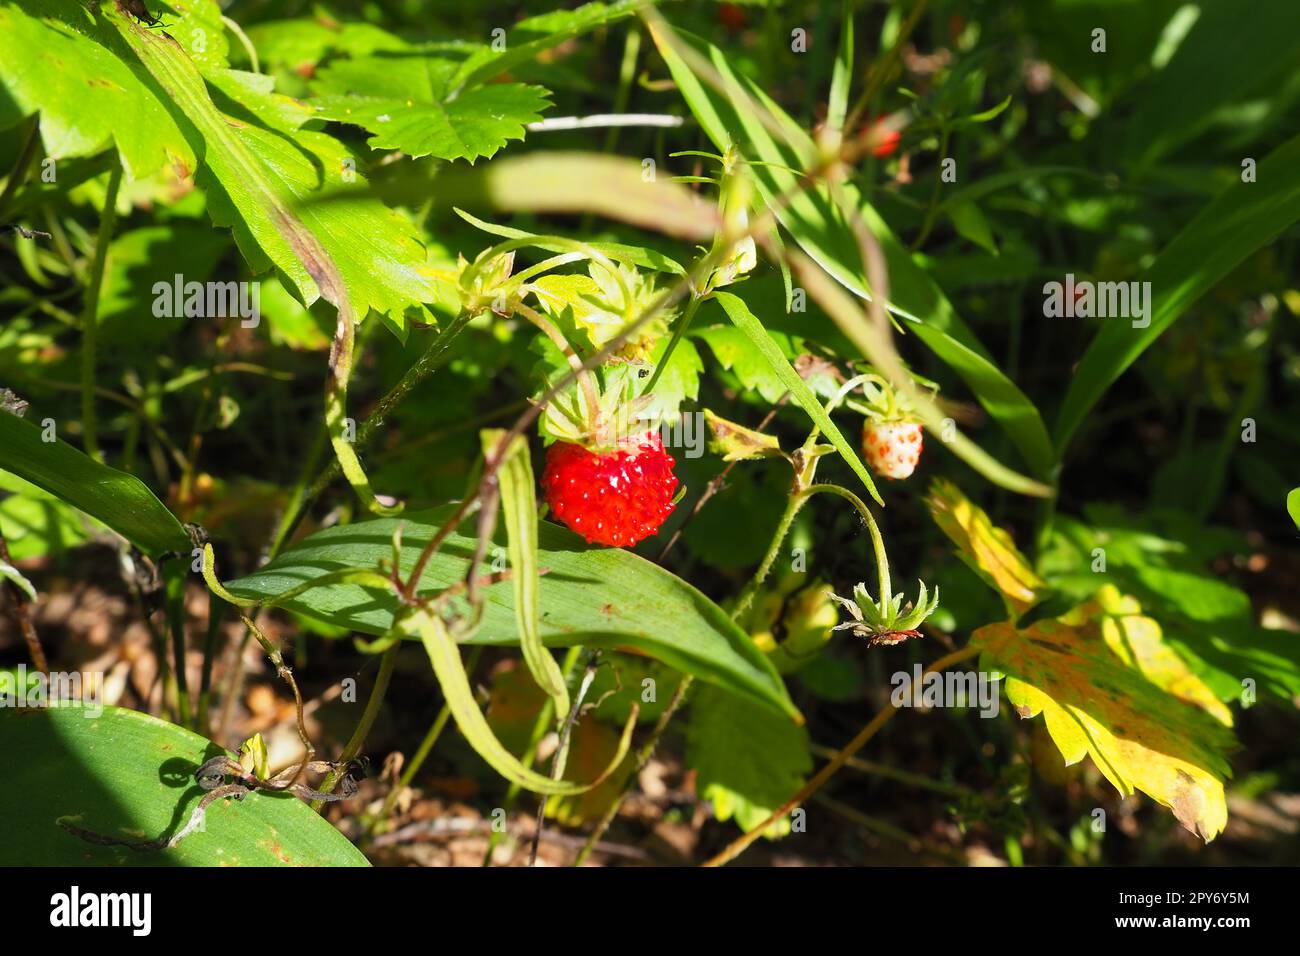 Strawberry Fragaria ist eine Gattung mehrjähriger krautiger Pflanzen der Rosenfamilie Rosaceae. Wildes Aussehen. Wilde Erdbeeren im Wald. Taiga, Karelien, Orzega Stockfoto